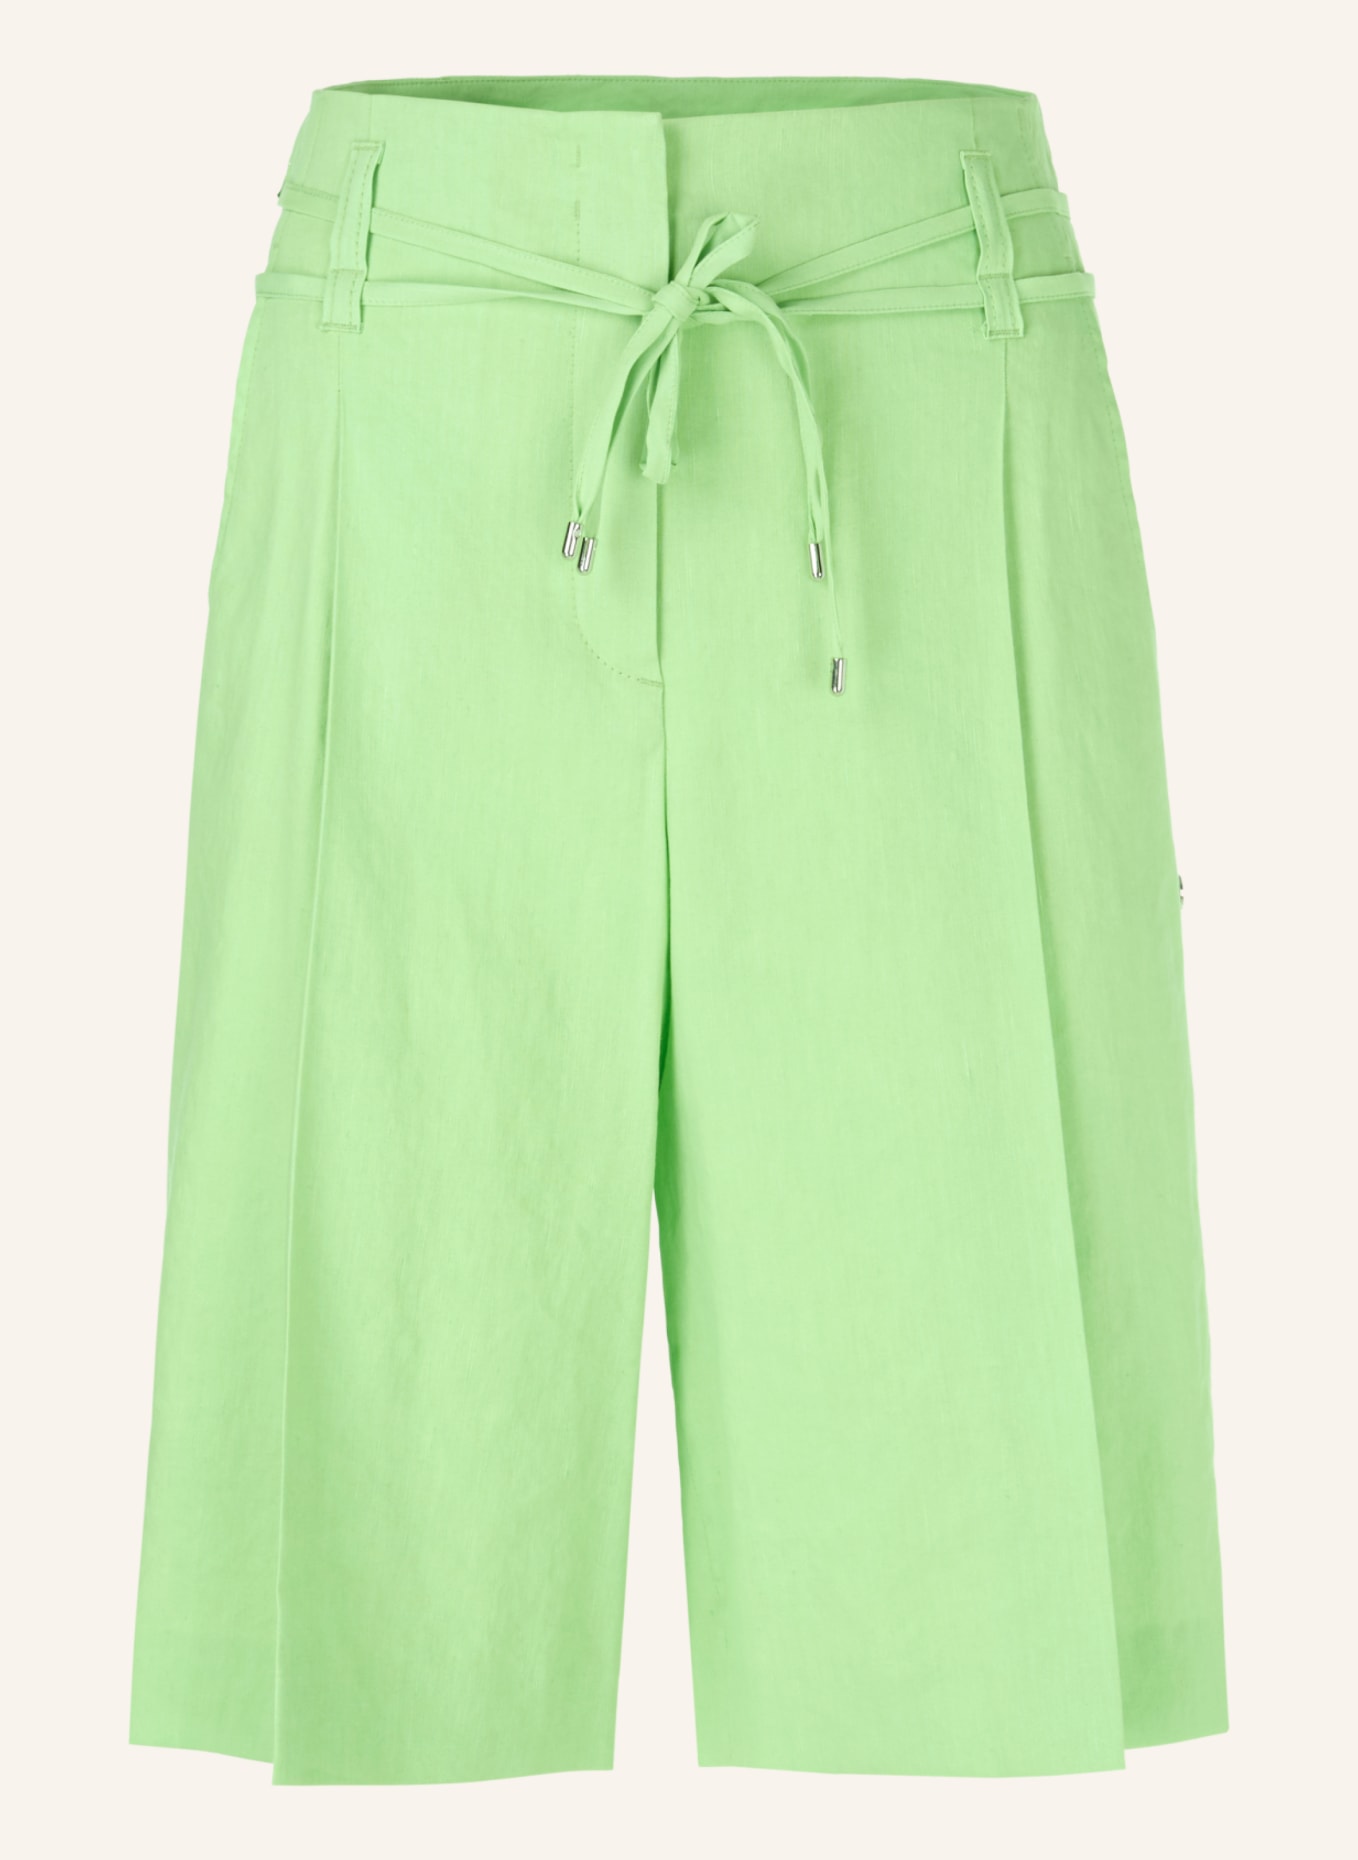 MARC CAIN Shorts, Farbe: GRÜN (Bild 1)